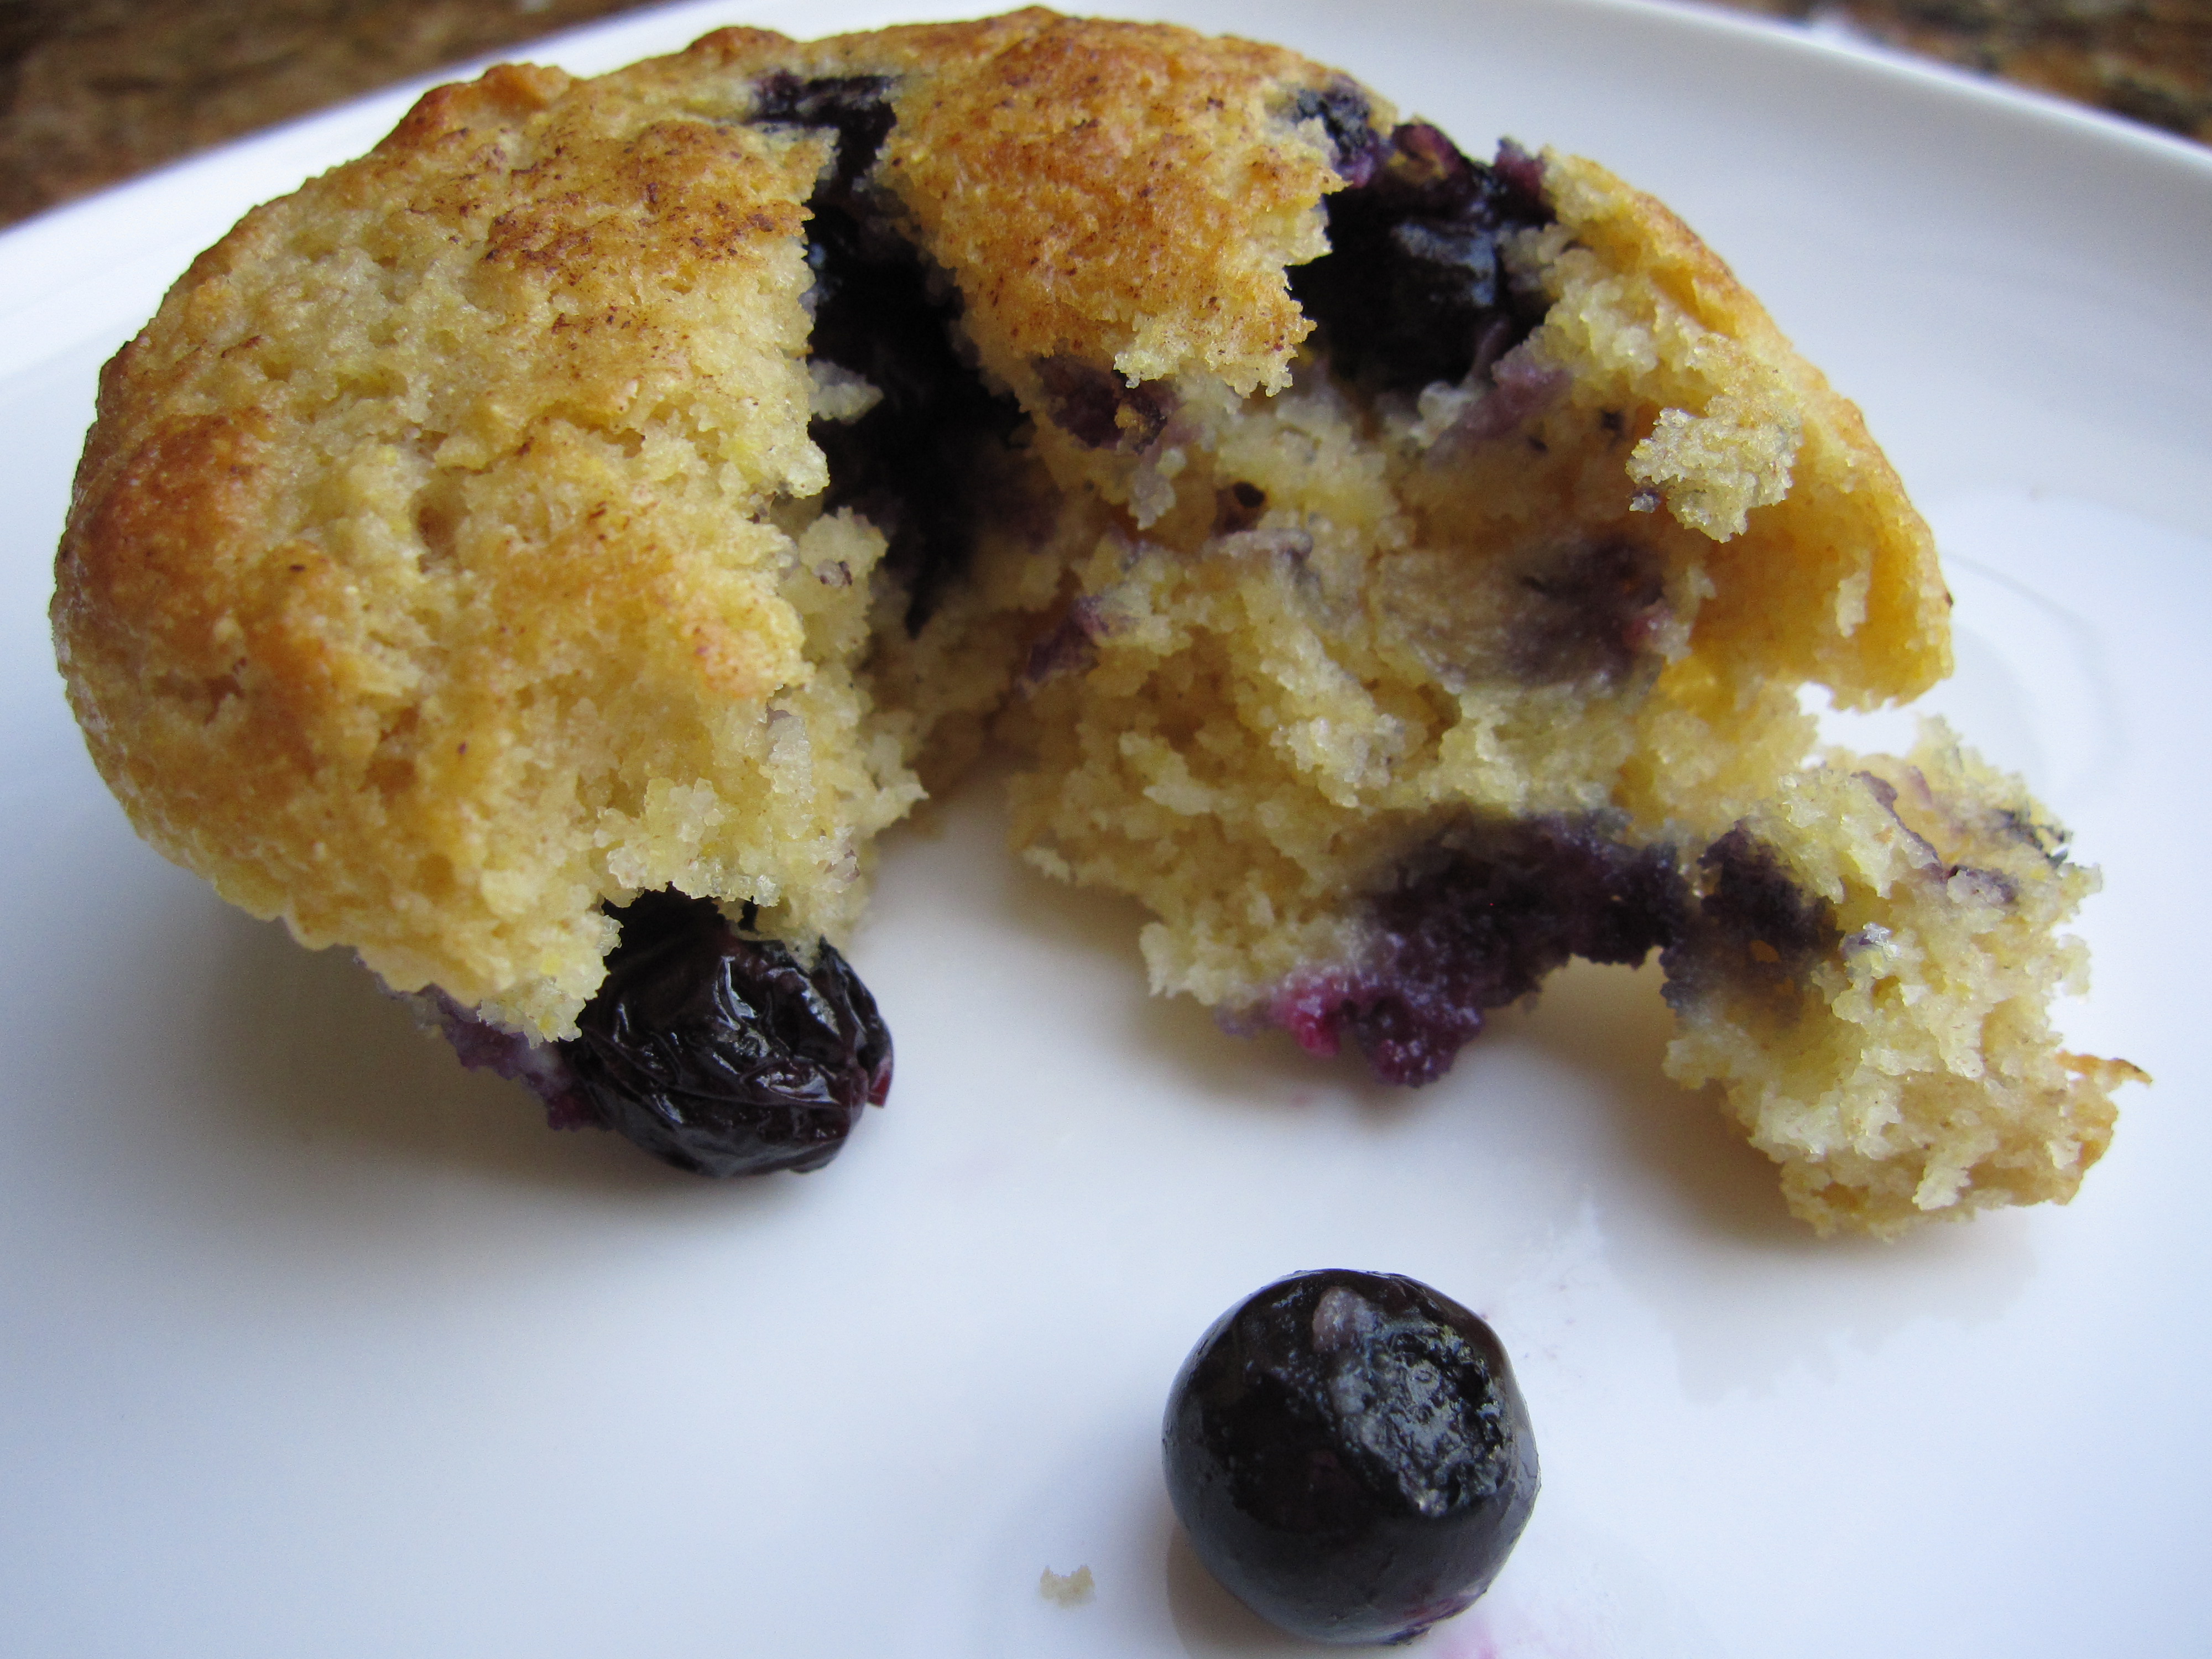 Broken open baked blueberry muffin. 